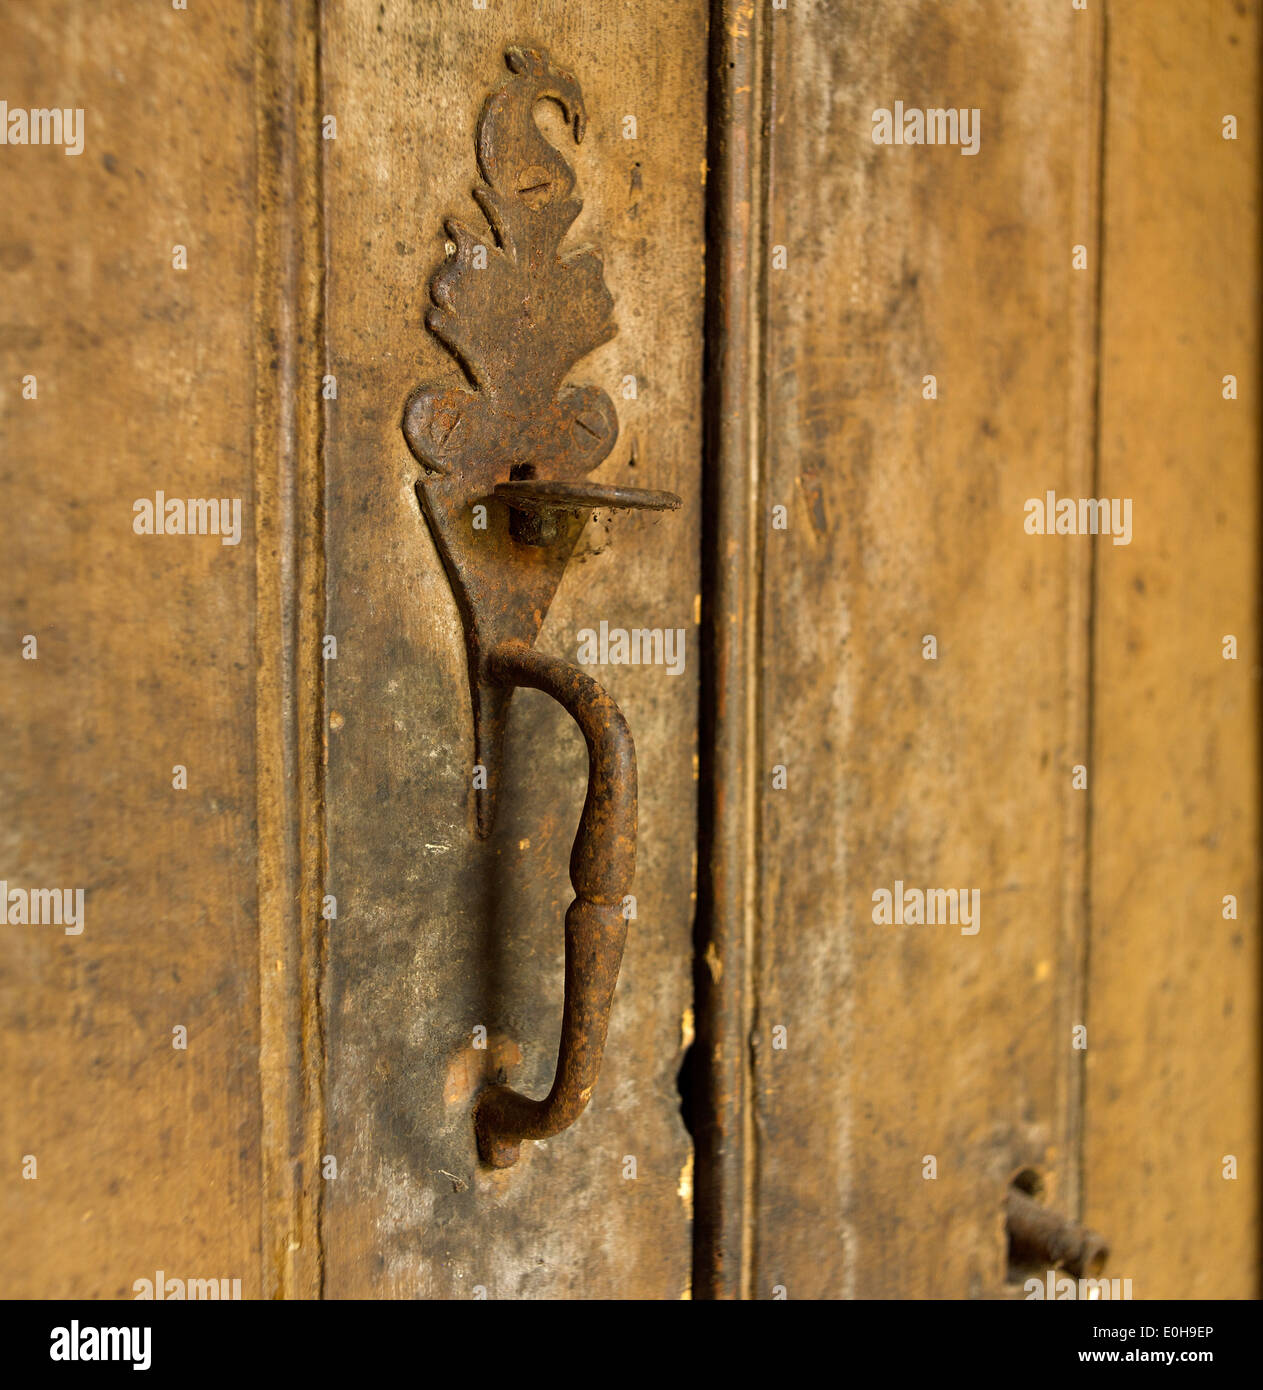 Old metal door latch and handle Stock Photo